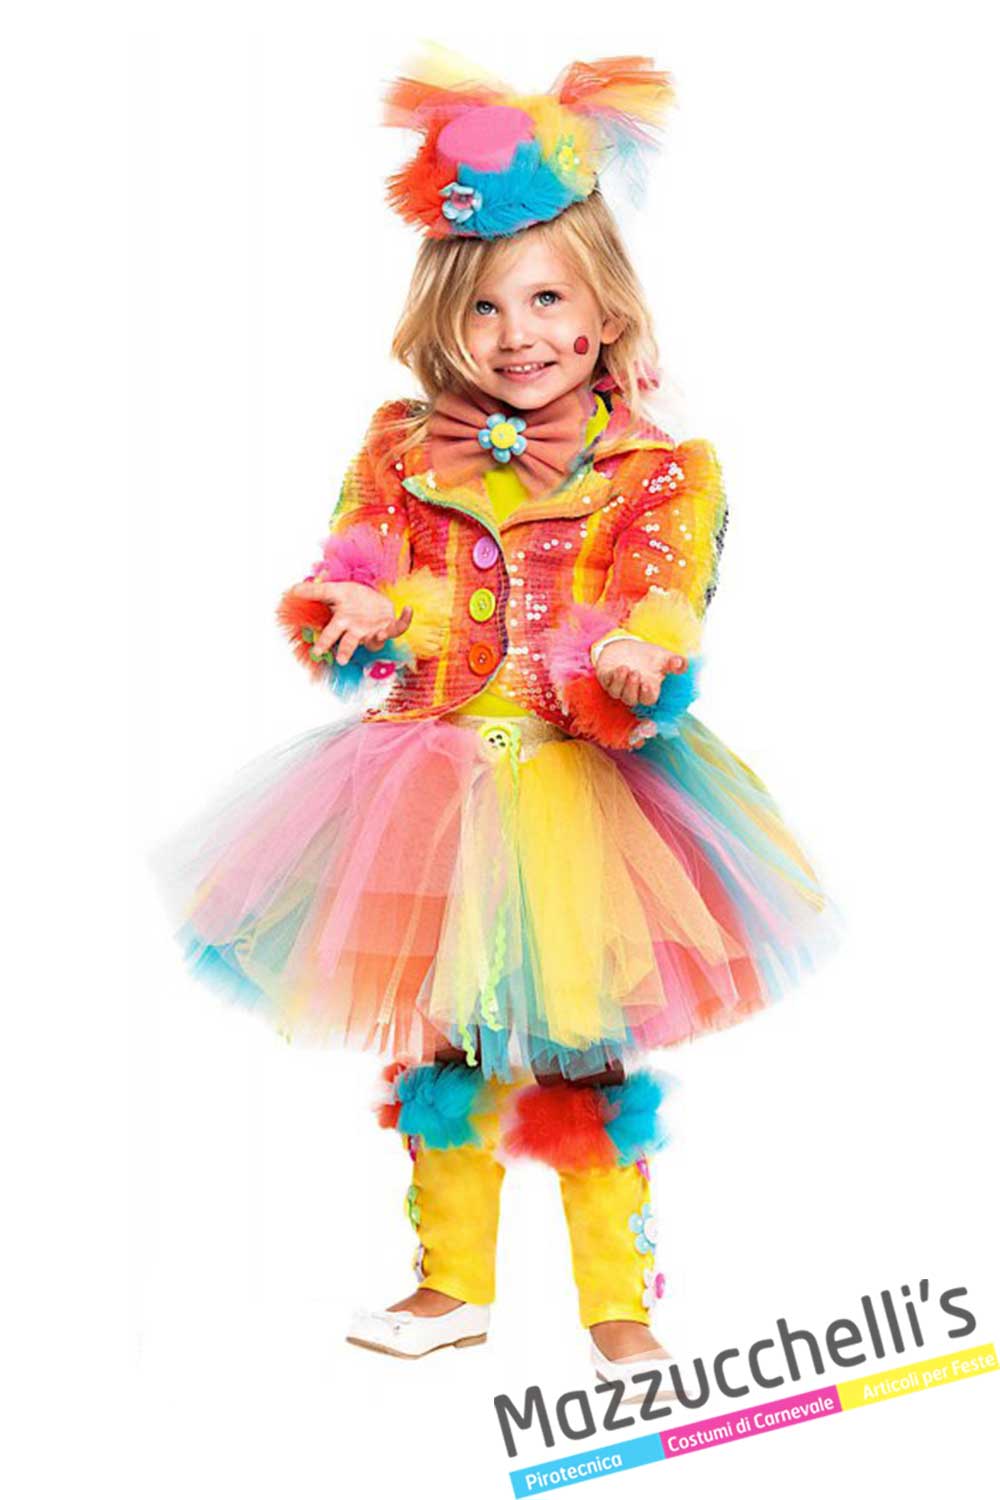 Costume Pagliaccio Bambino e Costumi da Circo per bambini